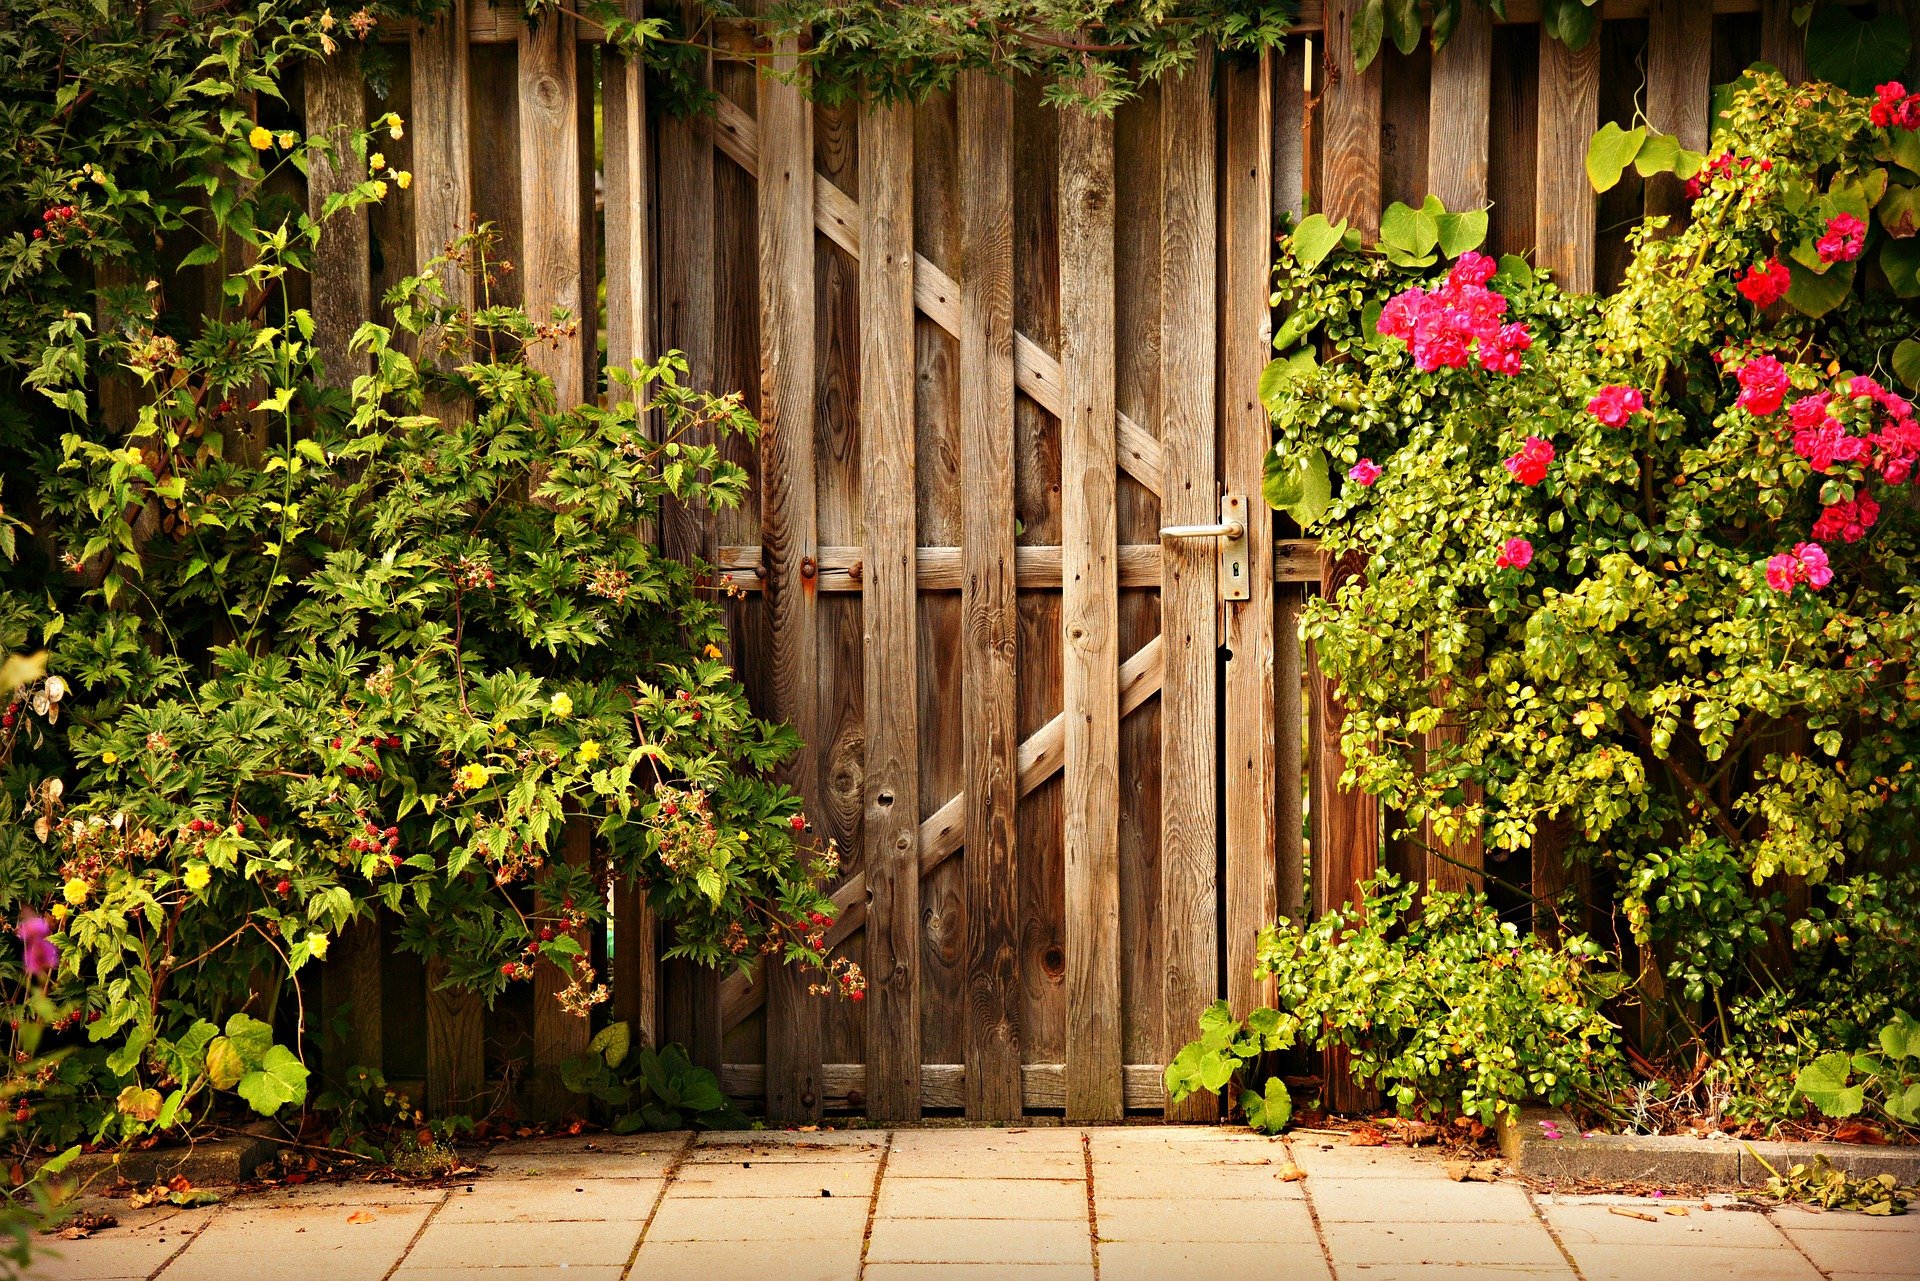 Pictured - Wooden door entry | Source: Pixabay 